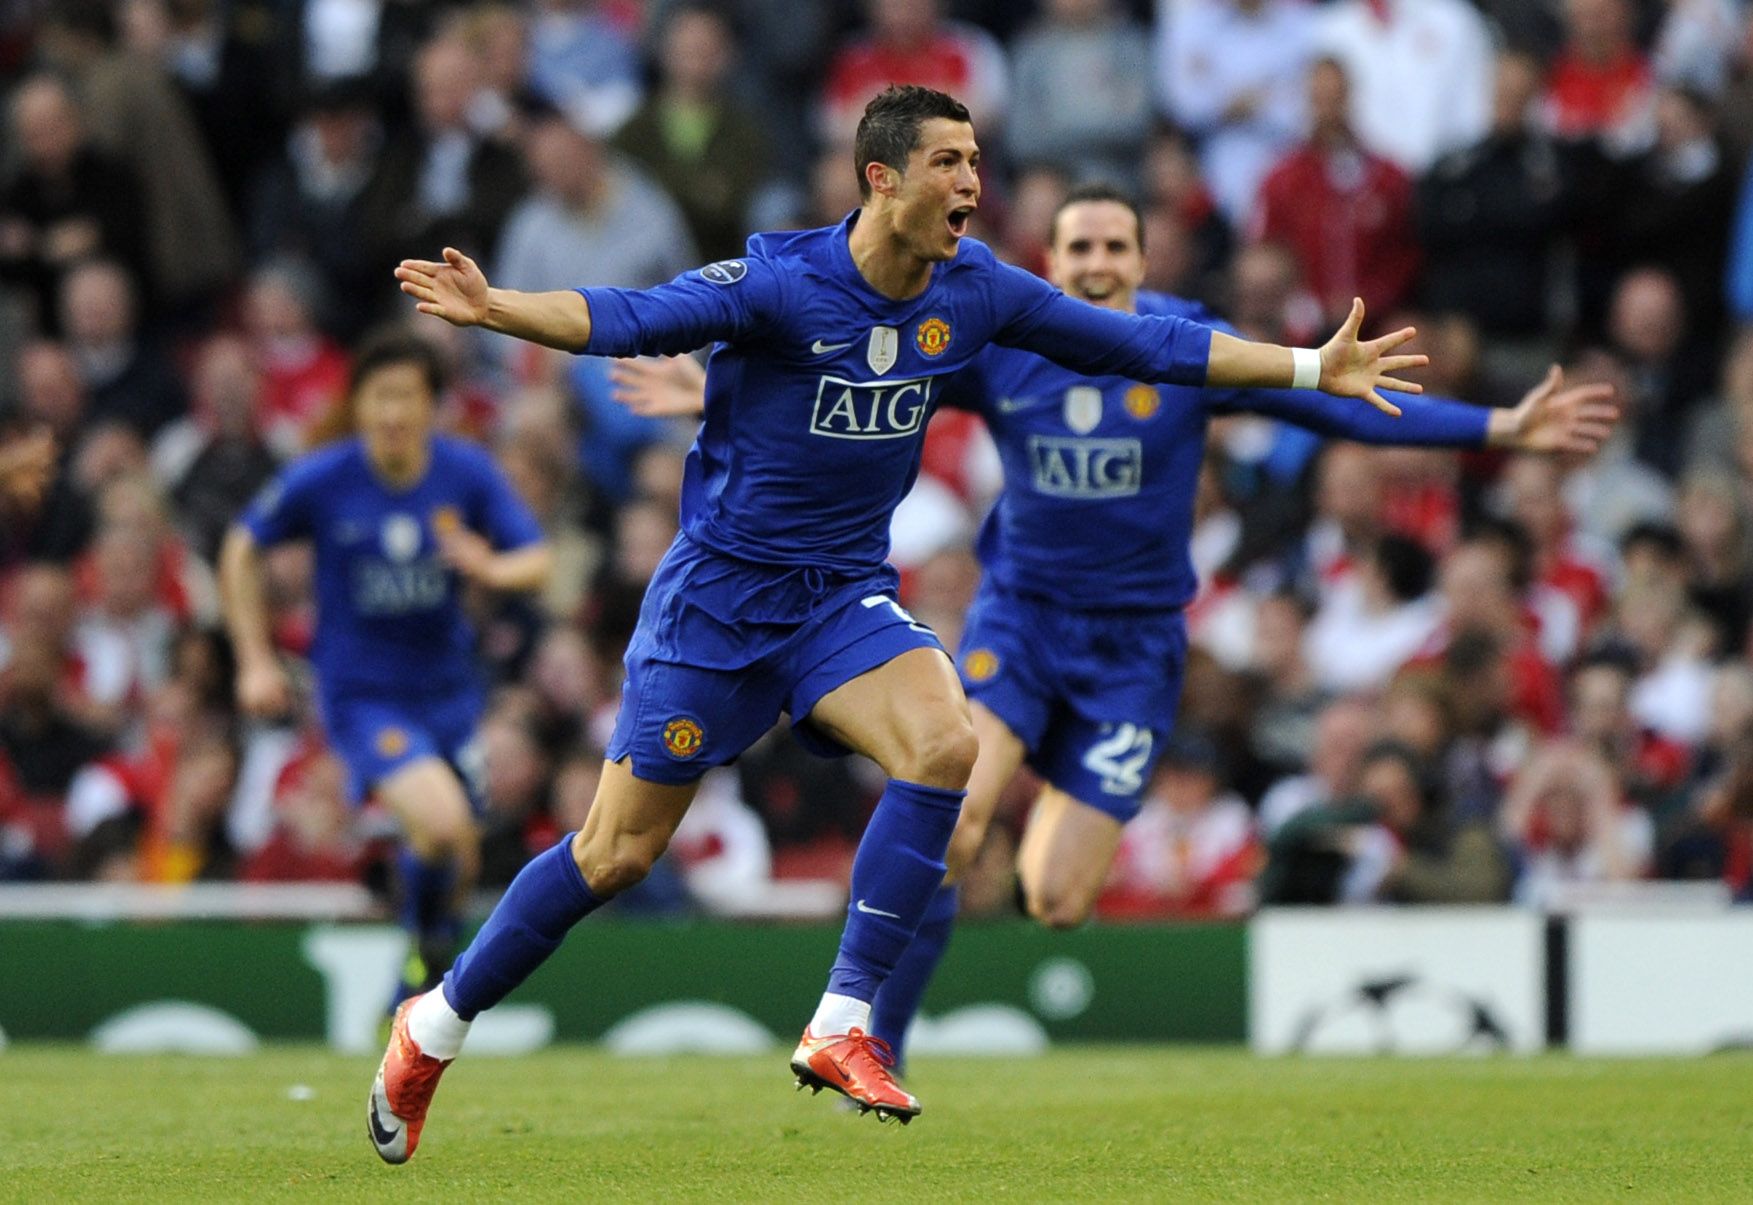 Cristiano Ronaldo celebrates in Arsenal vs Man Utd in 2009